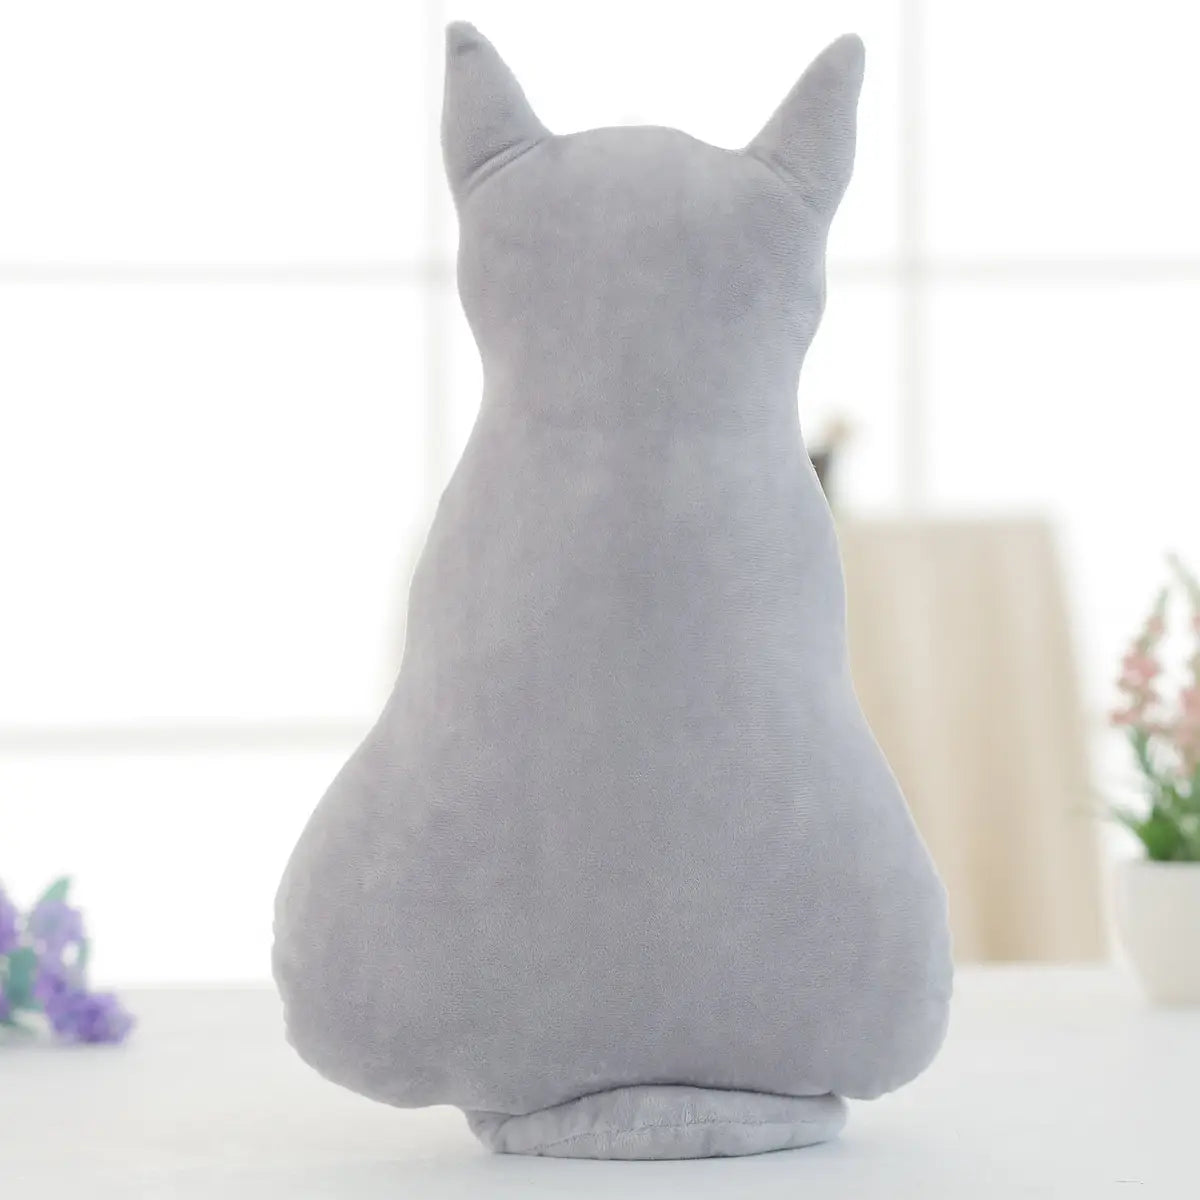 Creative Cat Big Pillow Plush Toy